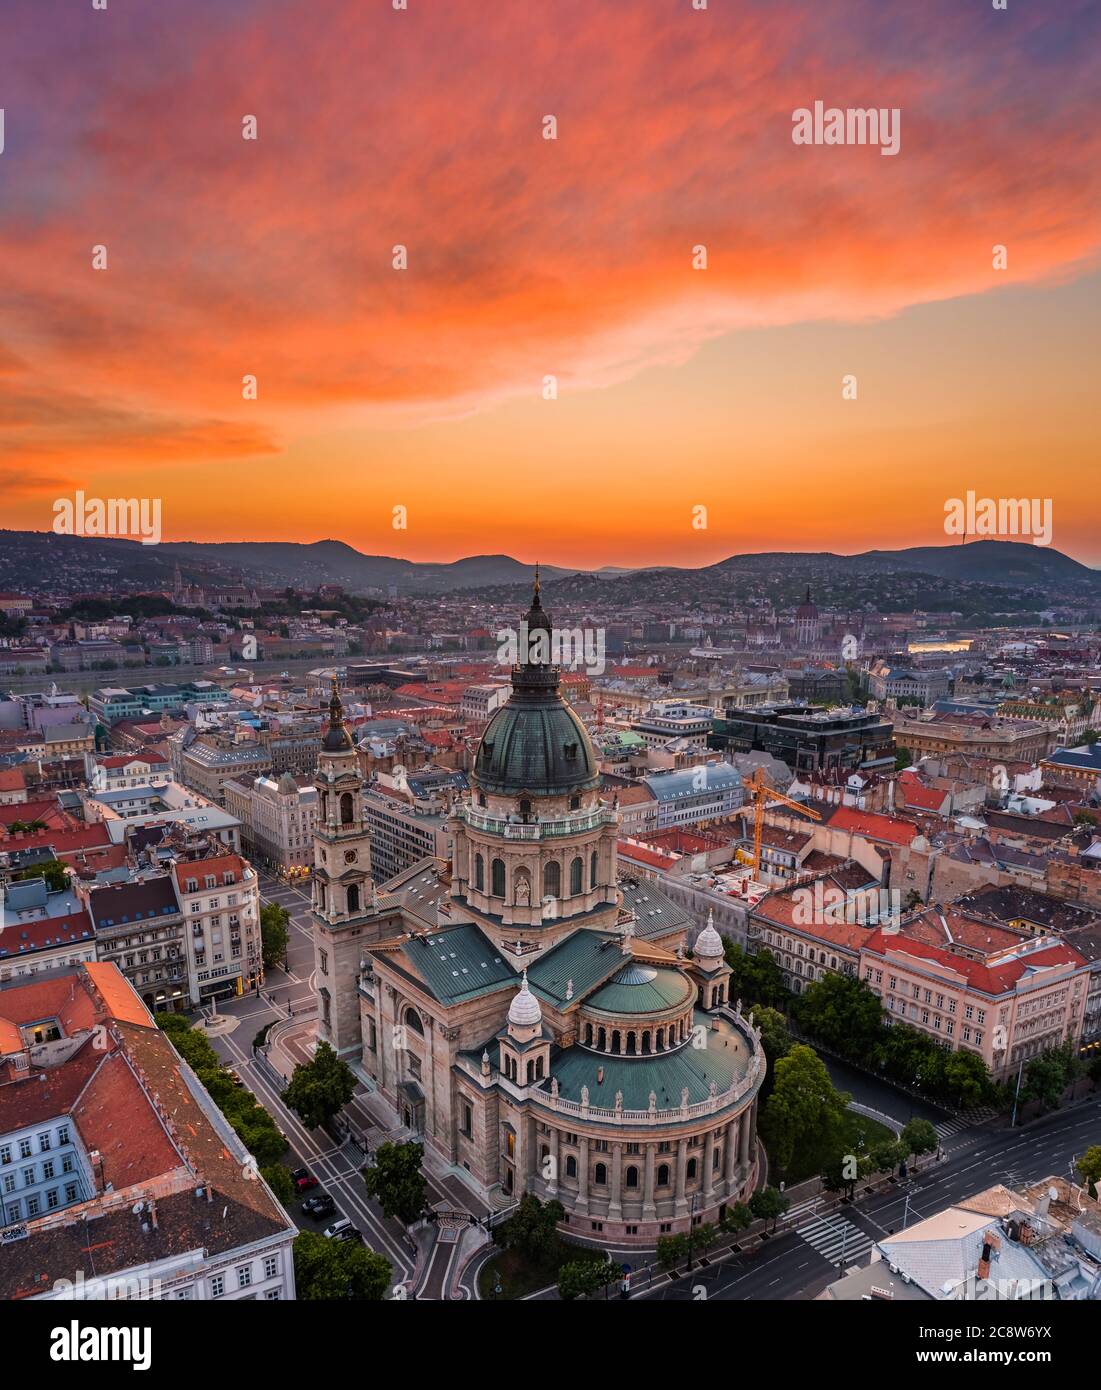 Budapest, Ungarn - Luftpanoramik Skyline Blick auf St. Stephen's Basilica mit einem erstaunlichen bunten Sonnenuntergang und Parlamentsgebäude, Fisherman's Basti Stockfoto